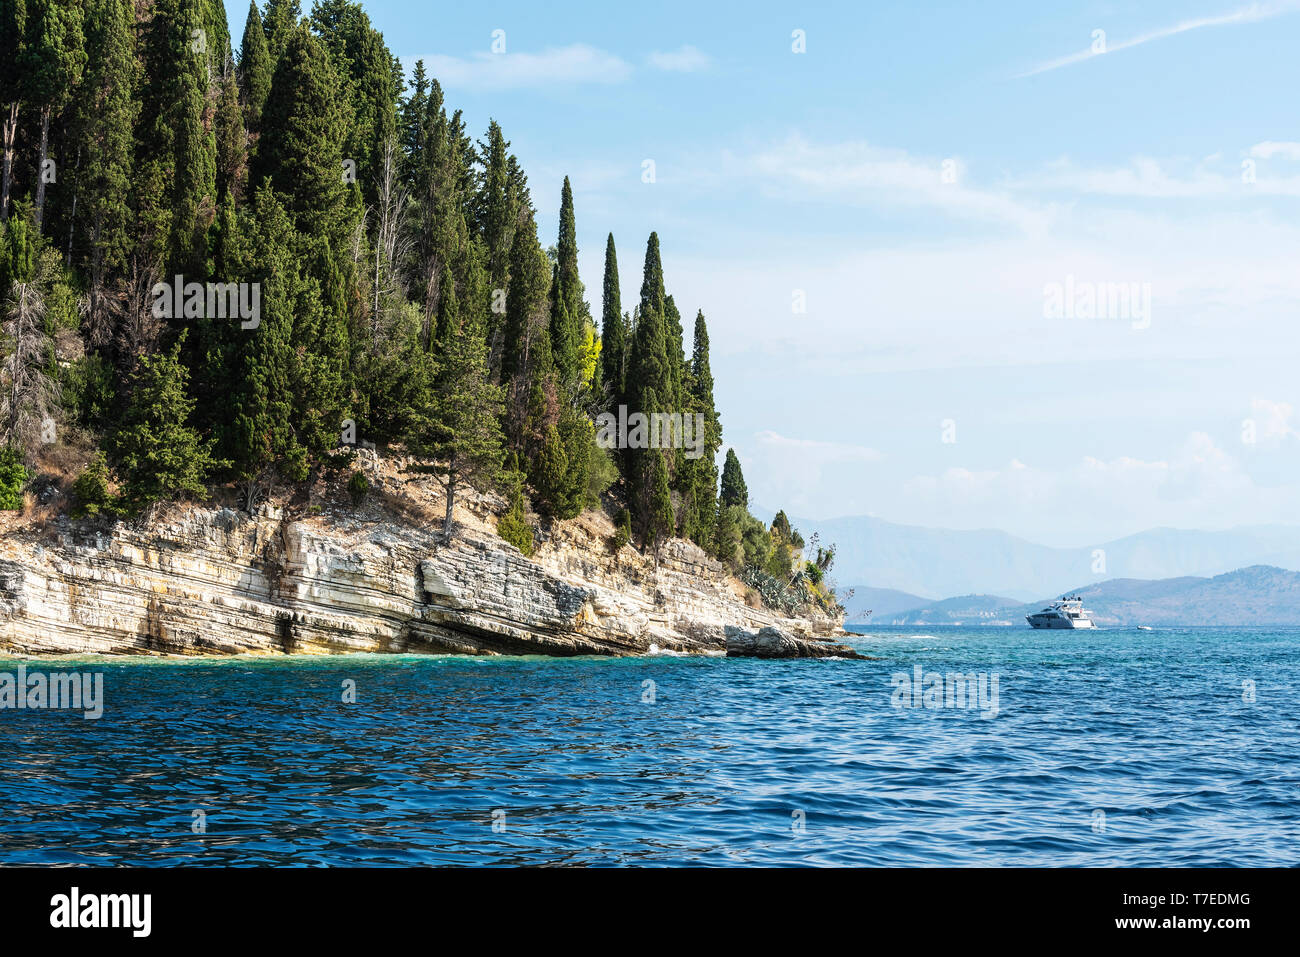 Costa, Nissaki, isola di Corfu, Isole Ionie, Mare mediterraneo, Grecia Foto Stock